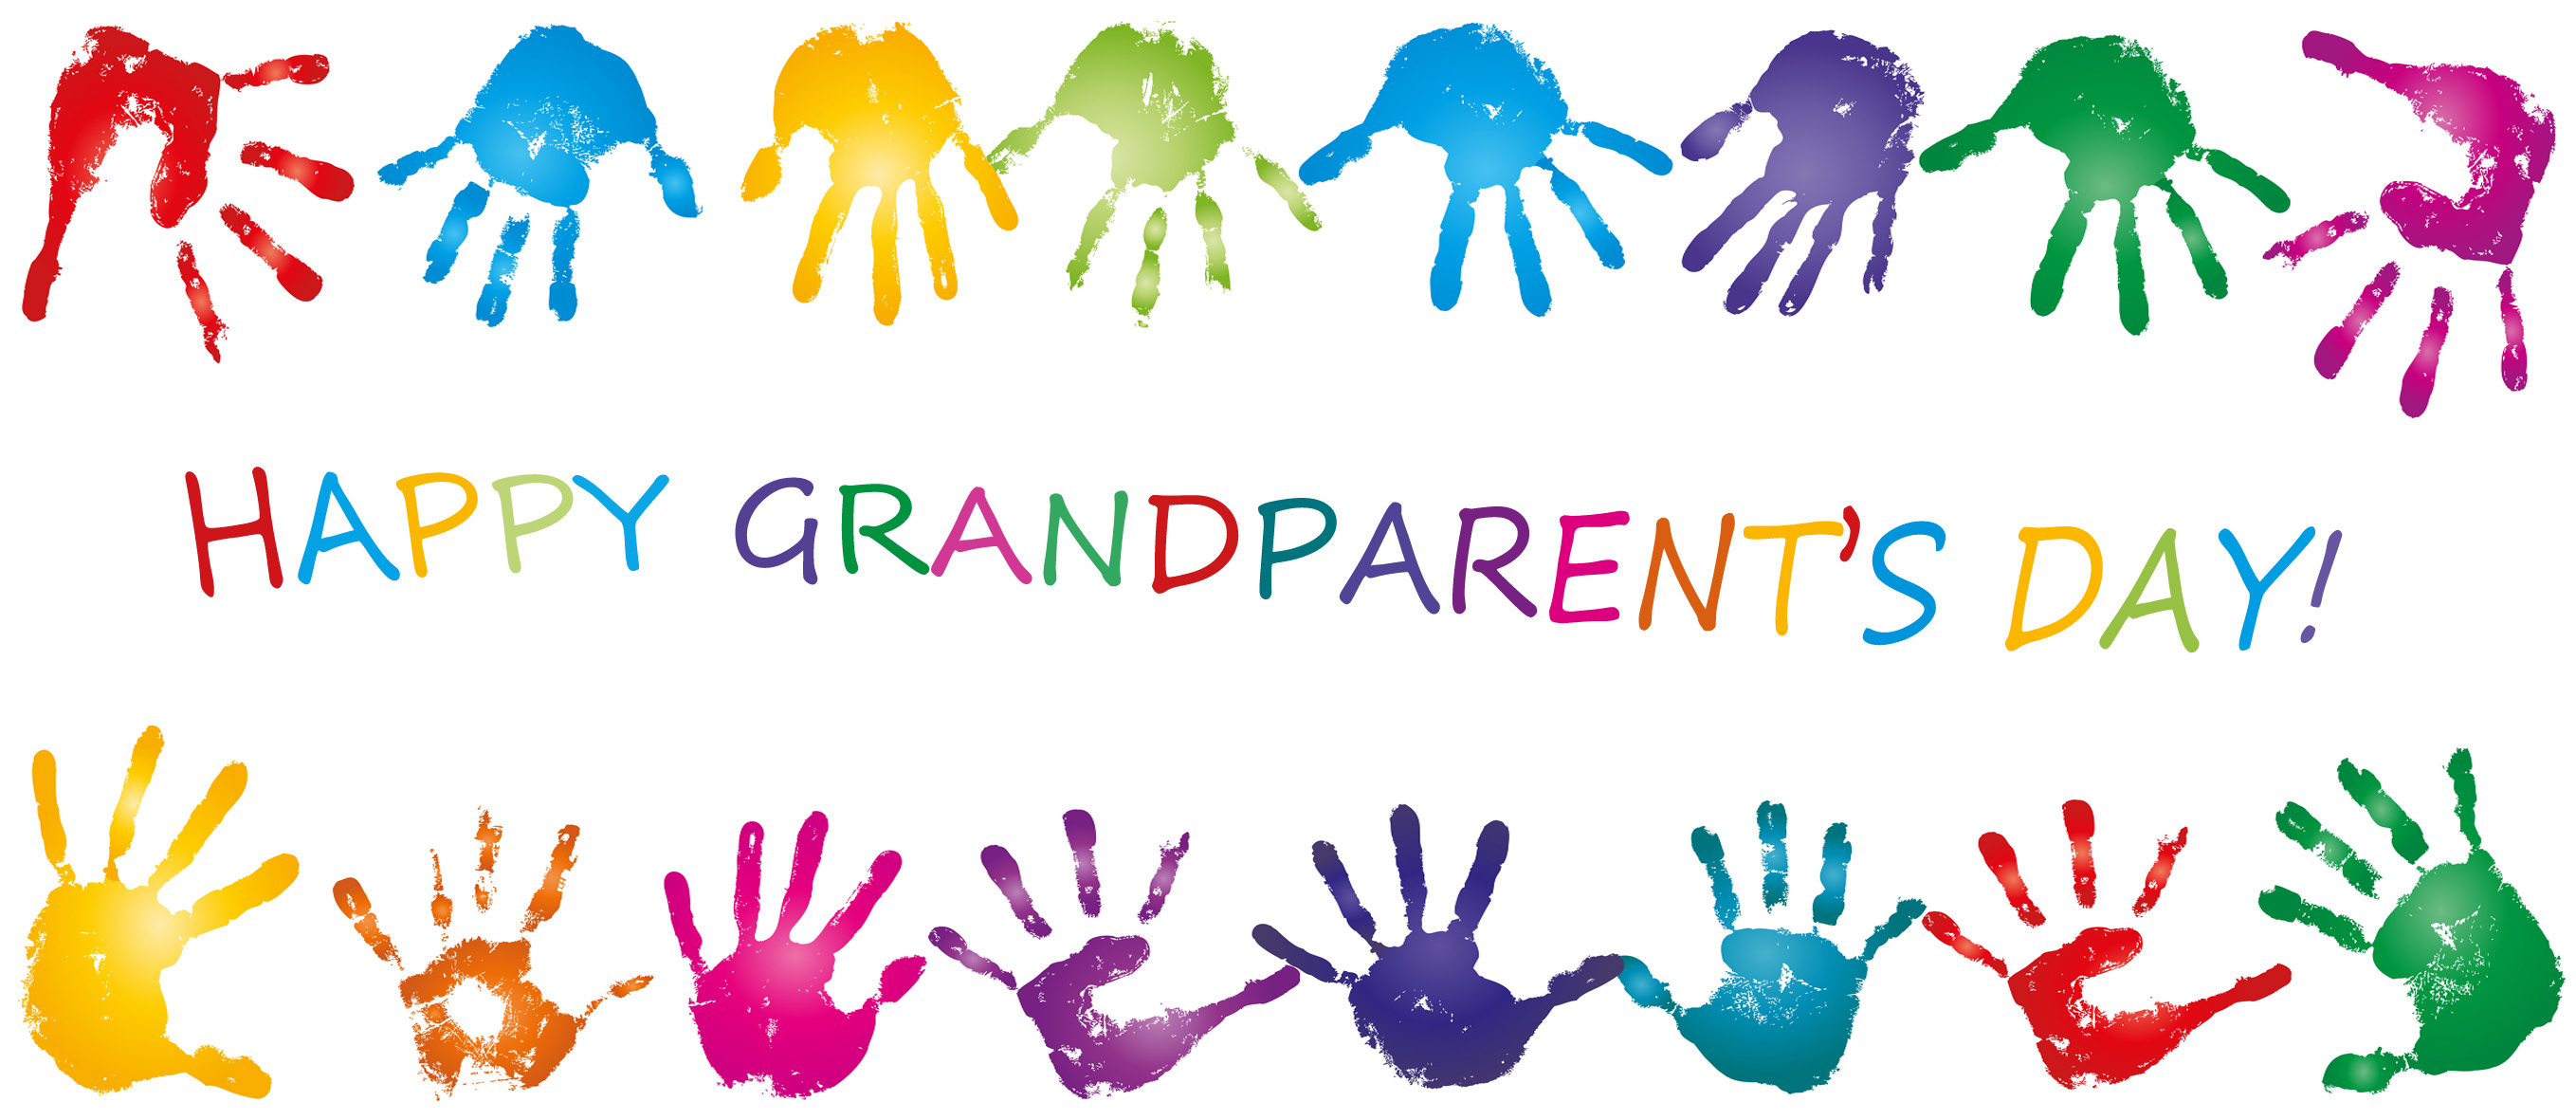 Grandparents parent teacher conference clipart picture free